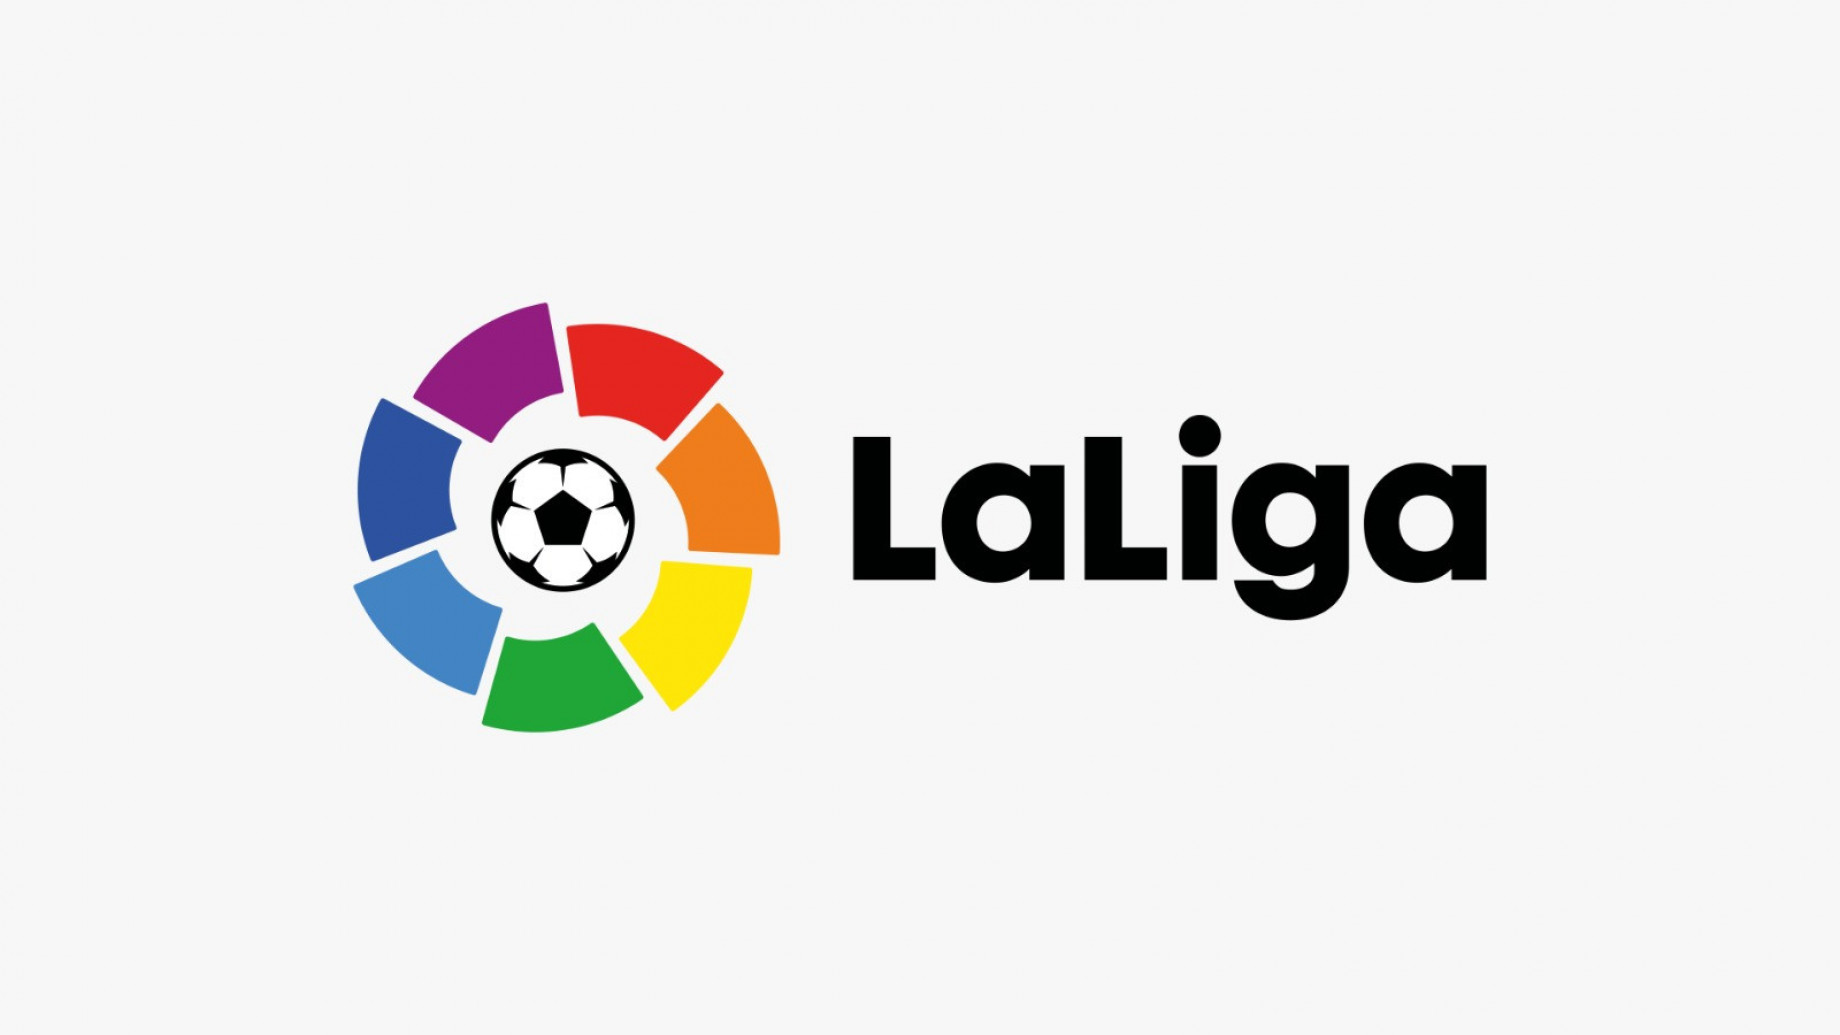 Logo_Liga_GDM.jpg